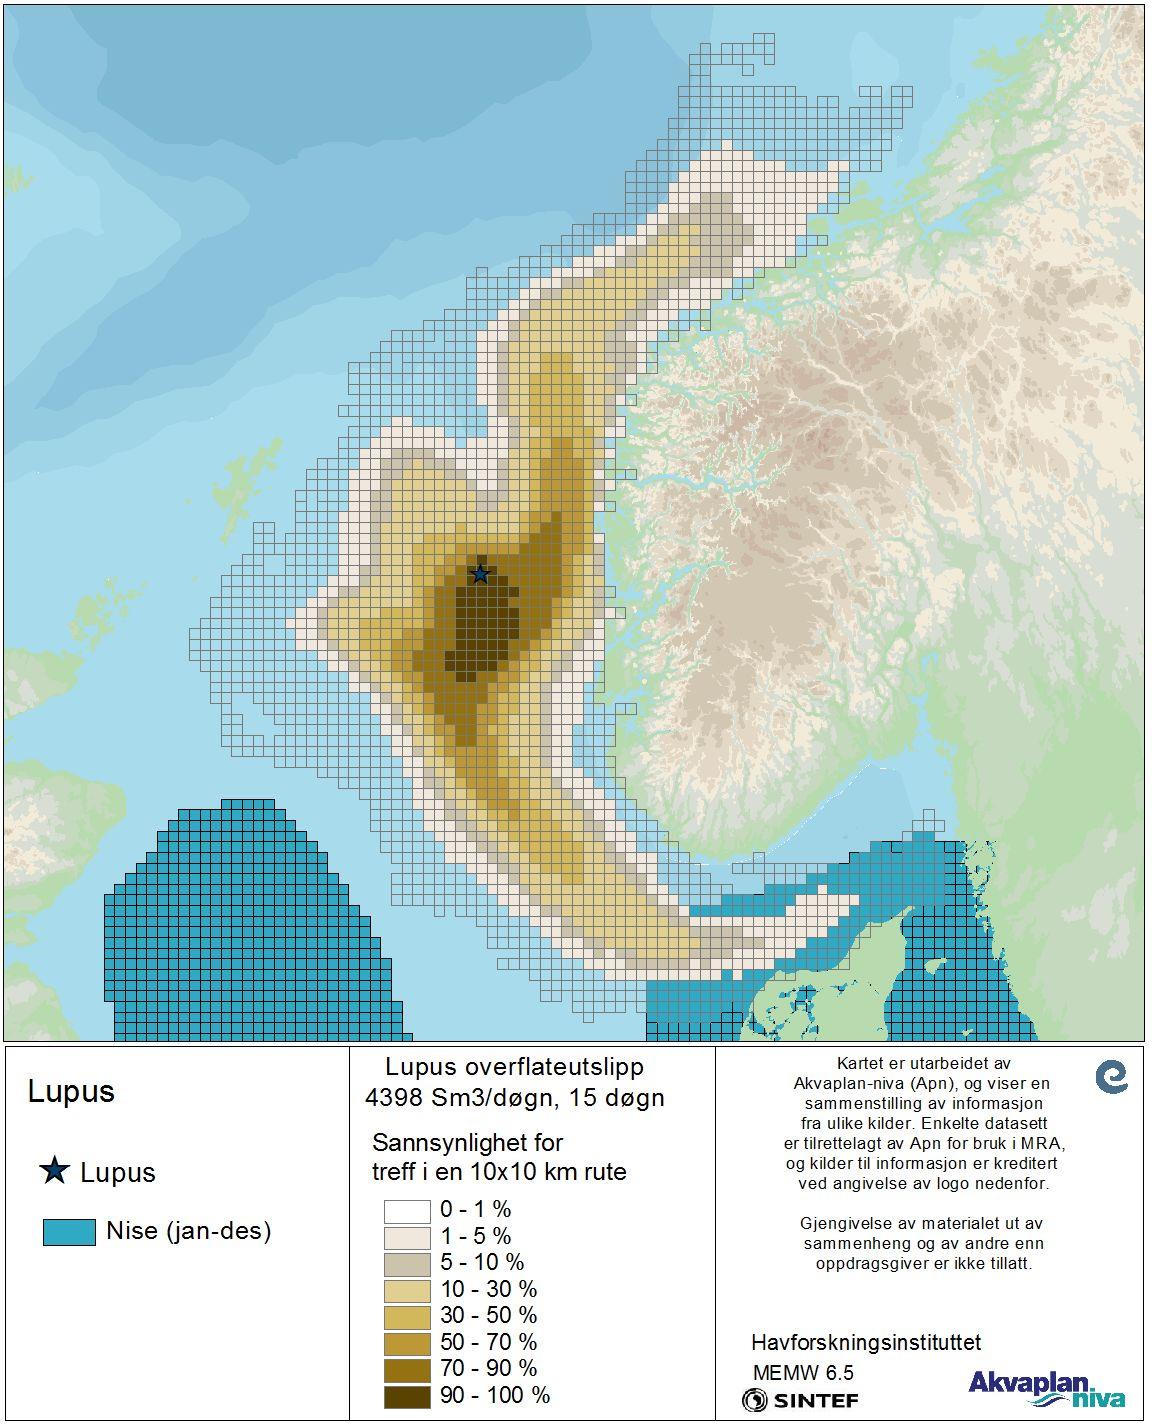 6.2.3 Miljørisiko for strandressurser Miljørisiko for strandressurser ble analysert for Tullow sin letebrønn Gotama (Spikkerud & Skeie 2013), og var for denne vesentlig lavere enn 1 % av